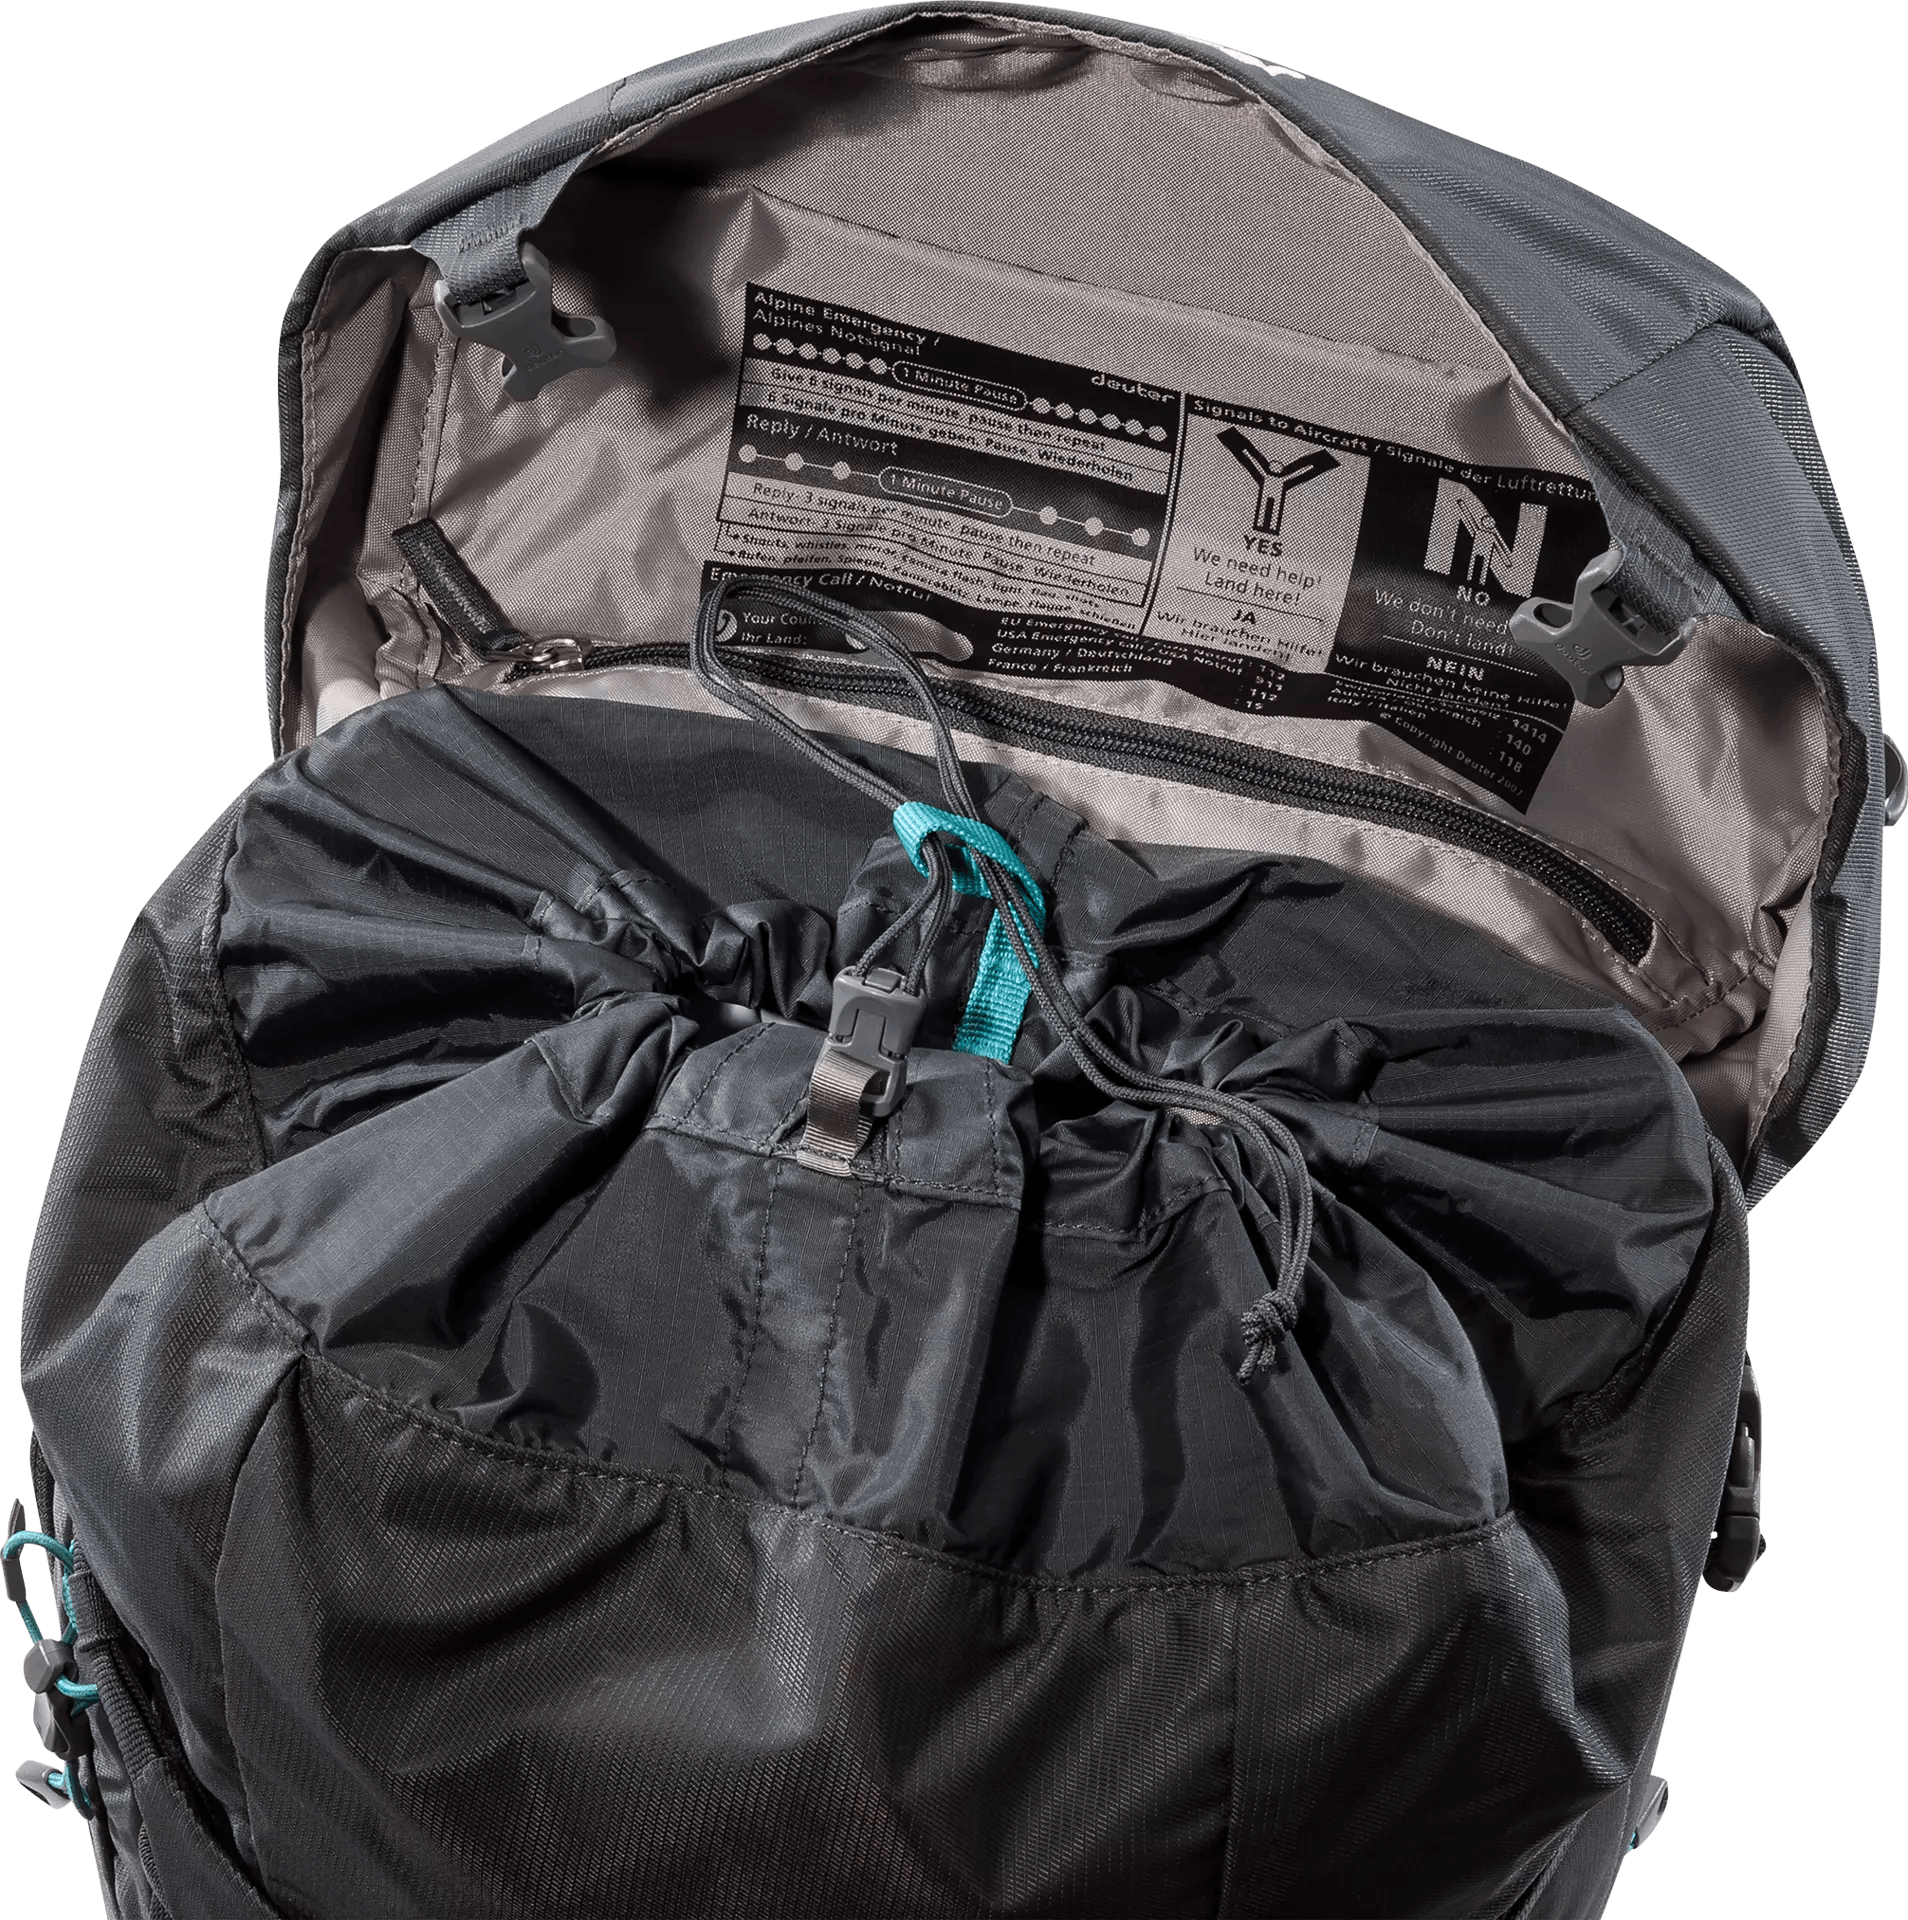 Deuter Trail Pro 34 SL Backpack